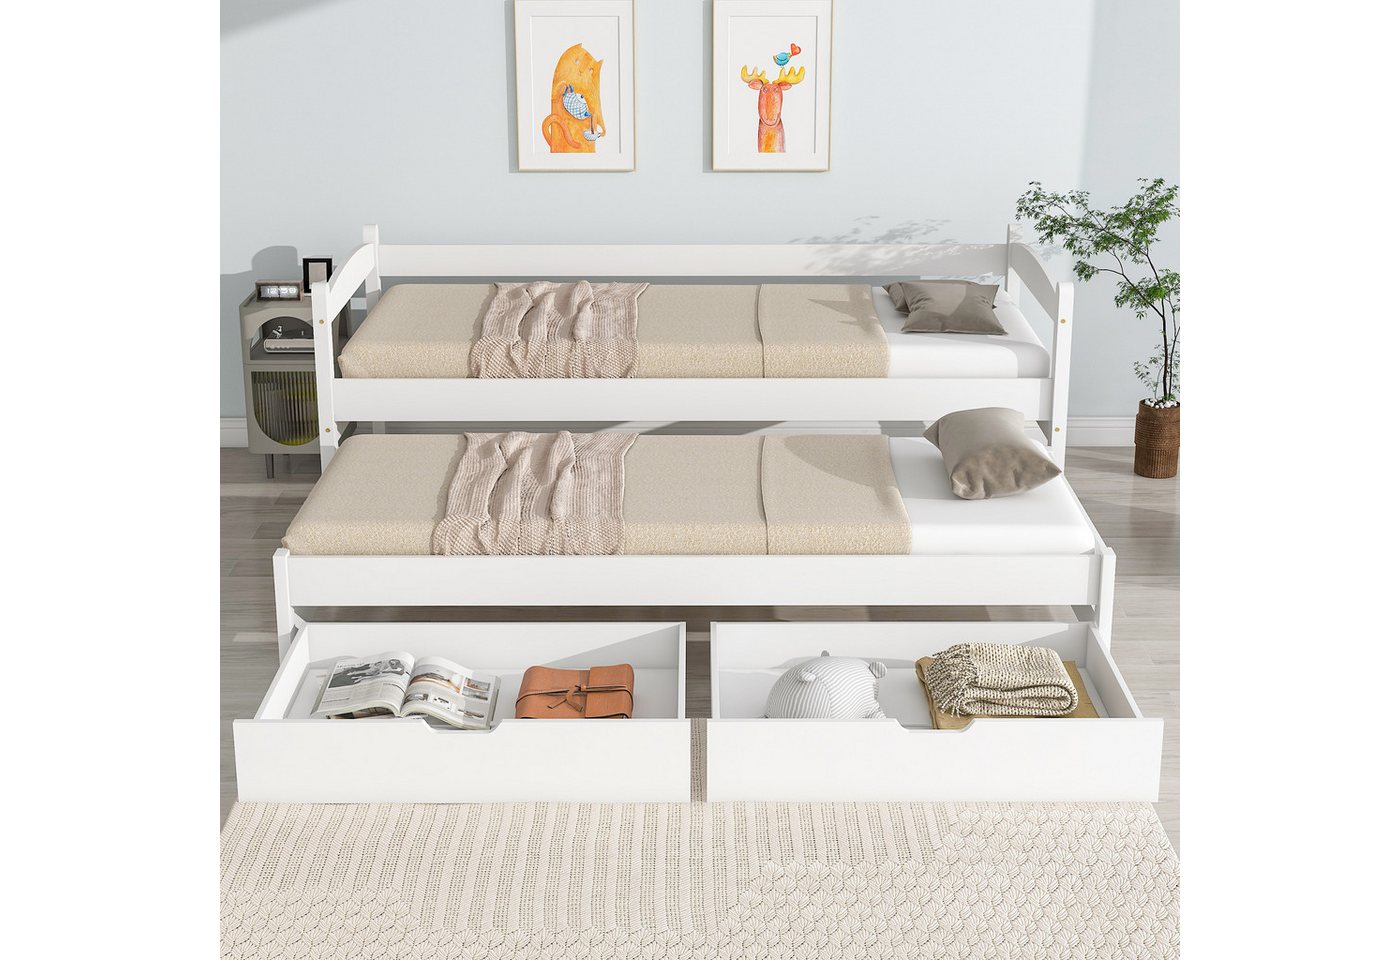 IDEASY Kinderbett Jugendbett, Twin mit Rollen und Stauraum, 200x90 cm/190x90 cm) (mit Seitengittern, mit stabilen Lattenrosten aus Holz), einfach zu montieren von IDEASY